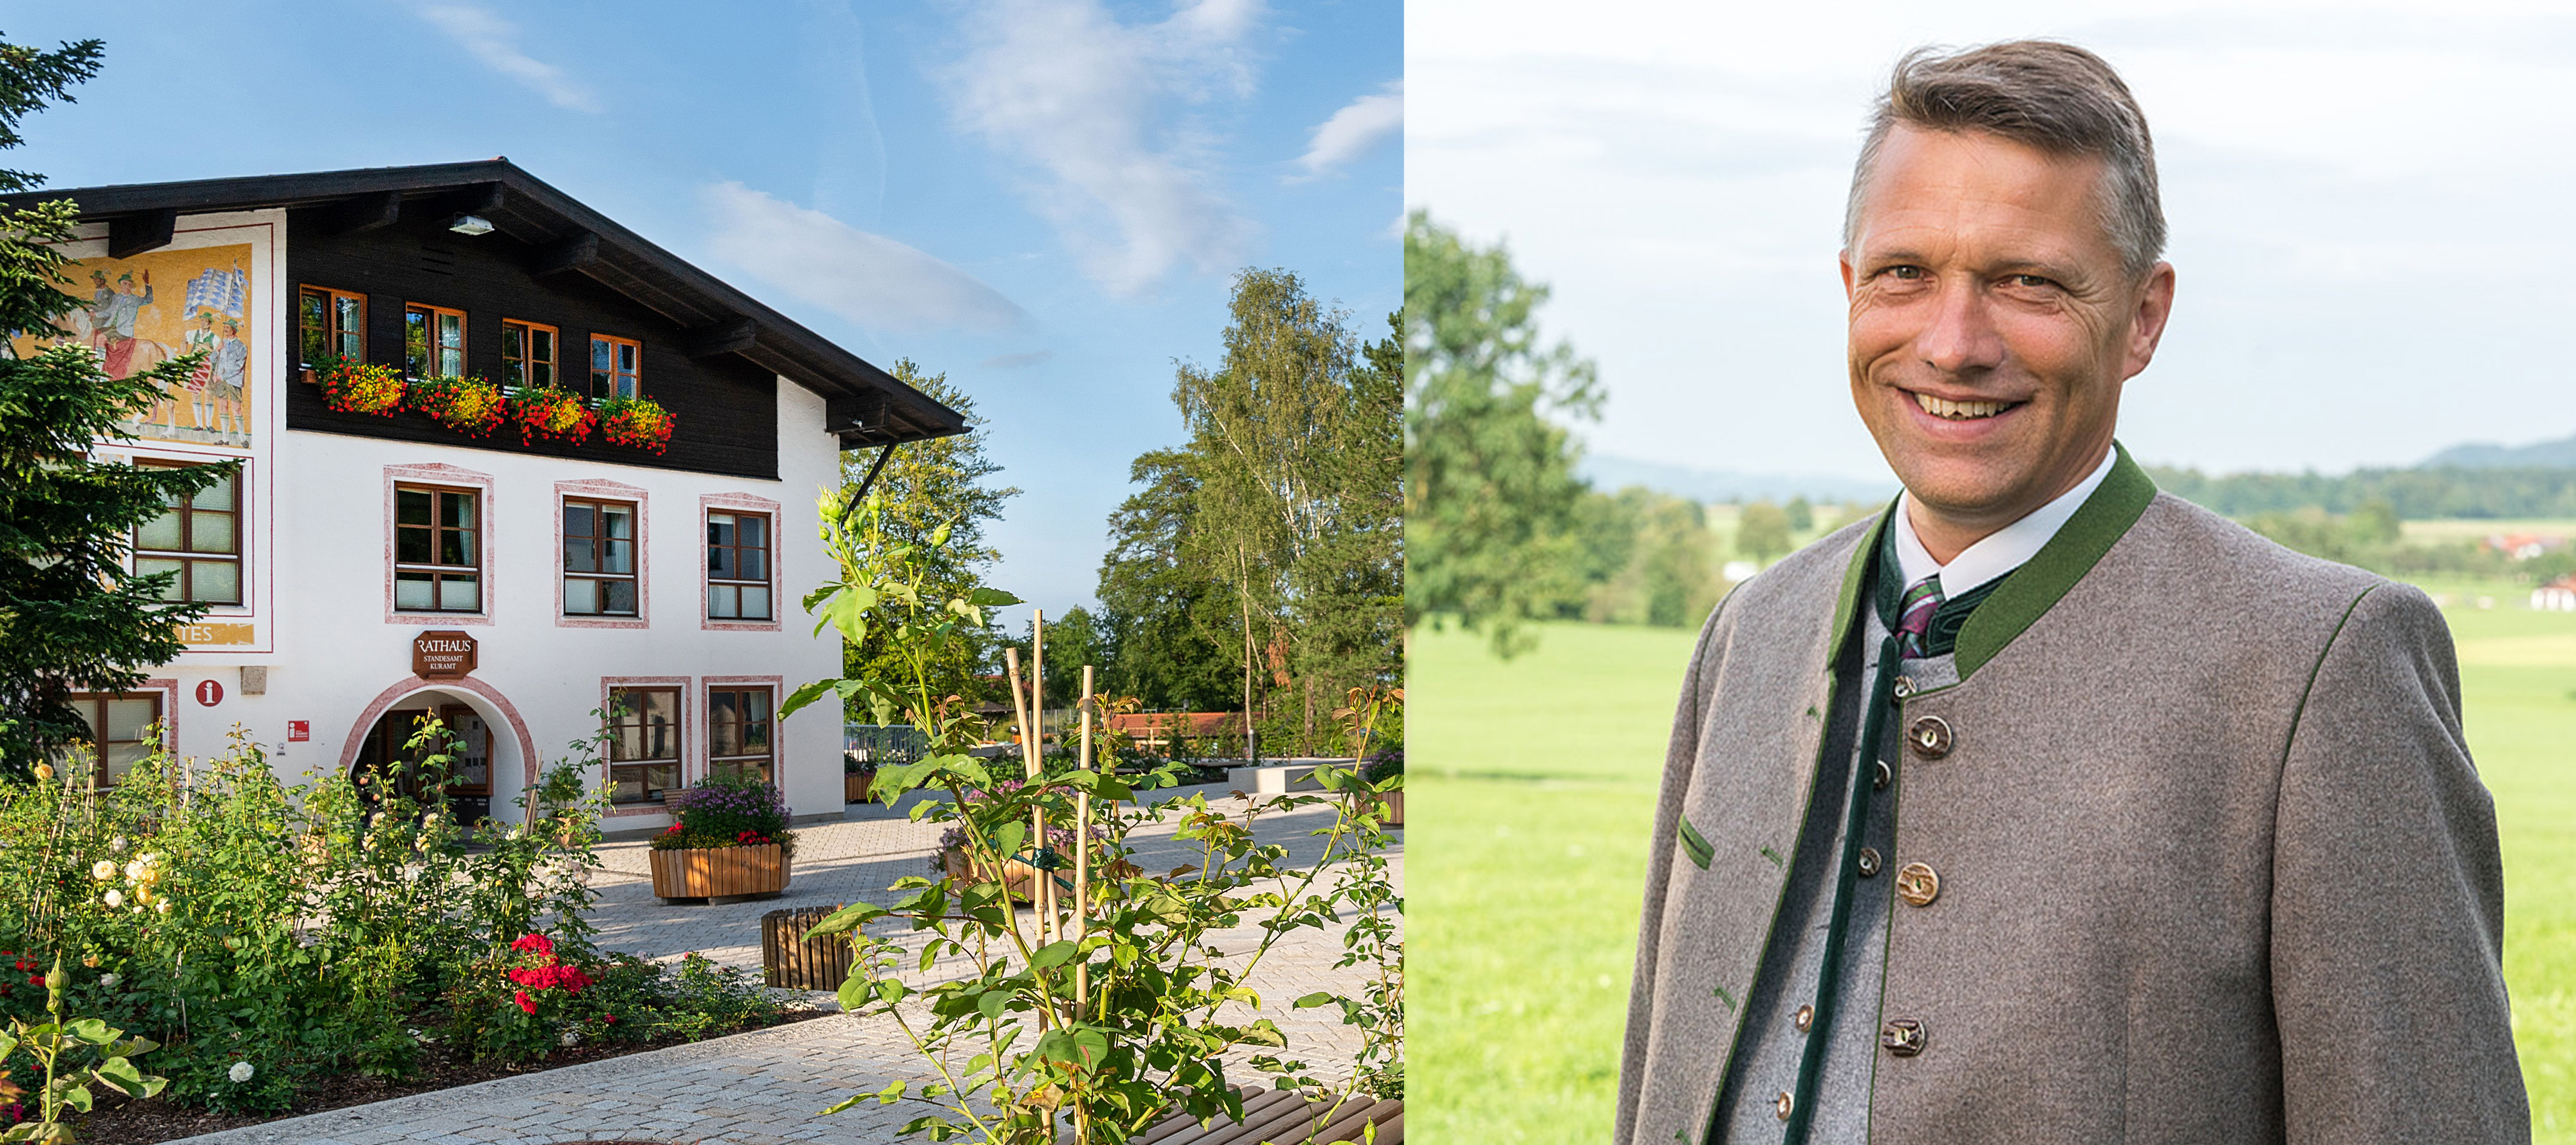 Erster Bürgermeister von Bad Feilnbach, Anton Wallner, zieht Resümee